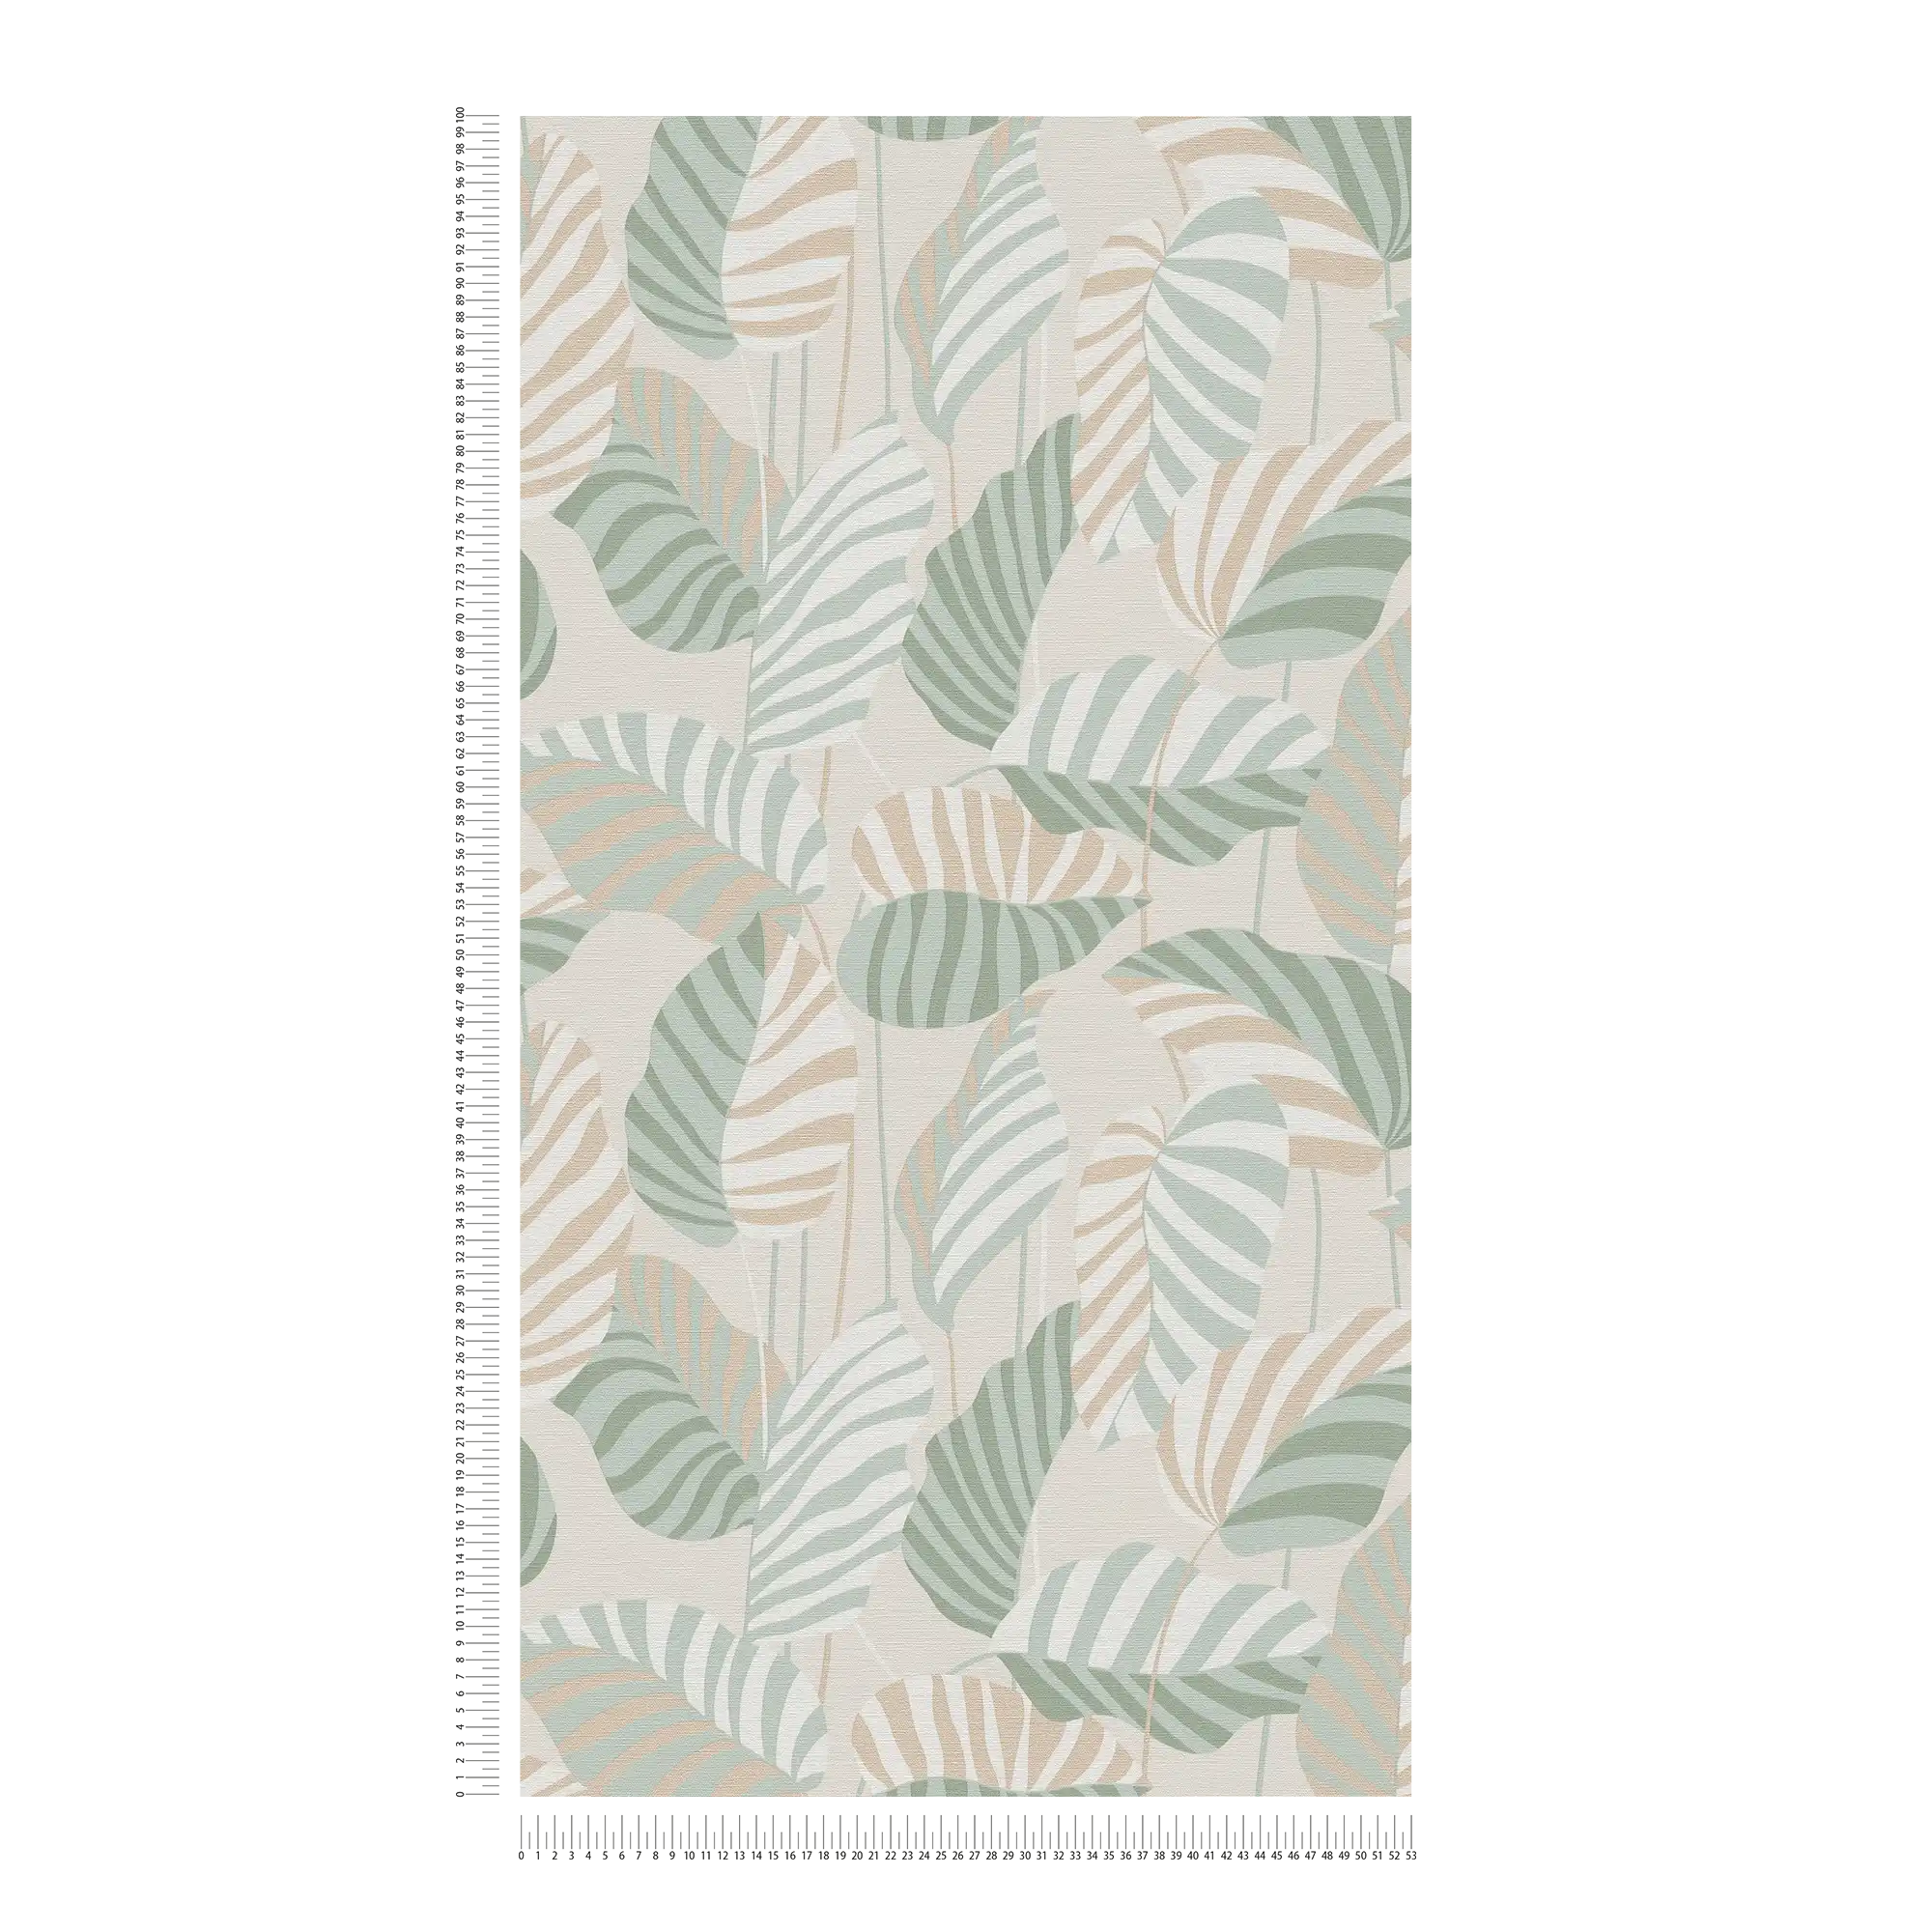             Carta da parati in tessuto non tessuto in stile naturale con foglie di palma leggermente lucide - crema, verde, oro
        